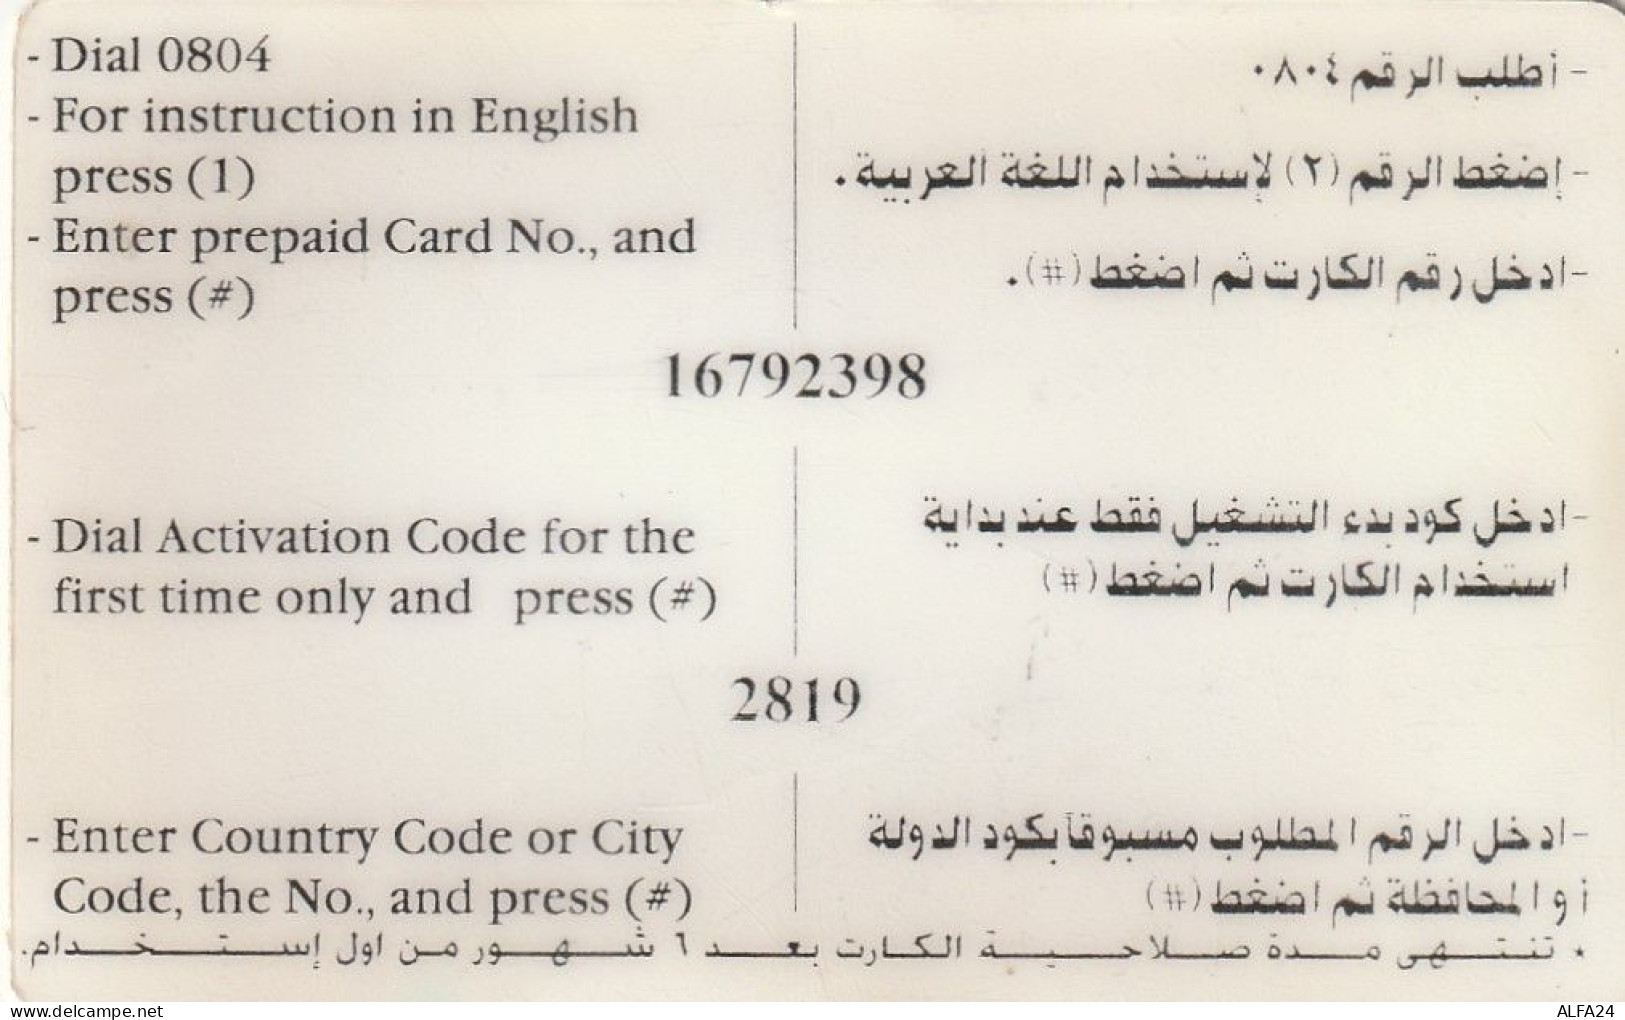 PREPAID PHONE CARD EGITTO  (CZ2182 - Egypt